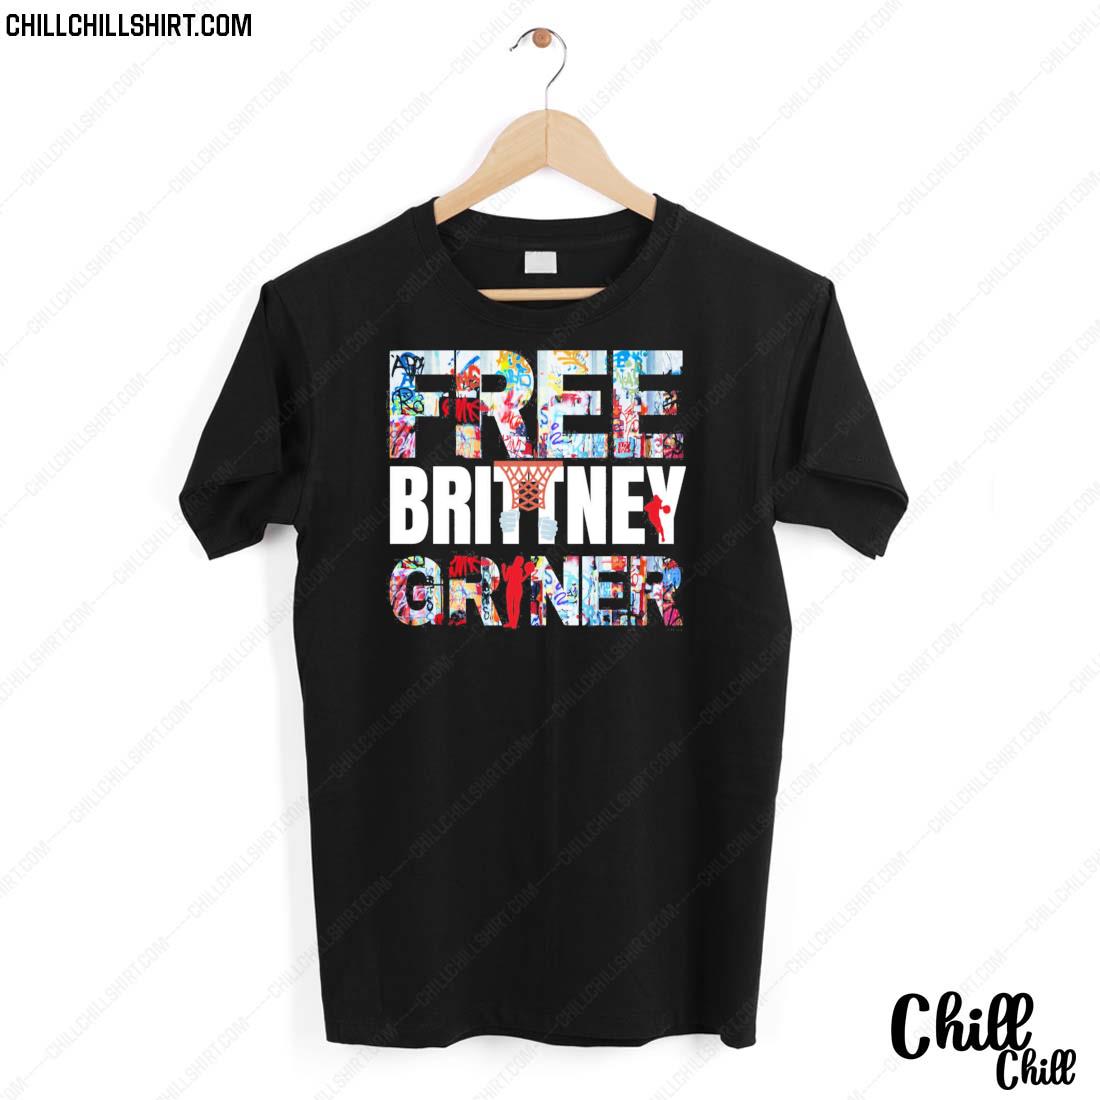 Nice free Brittney Griner Shirt